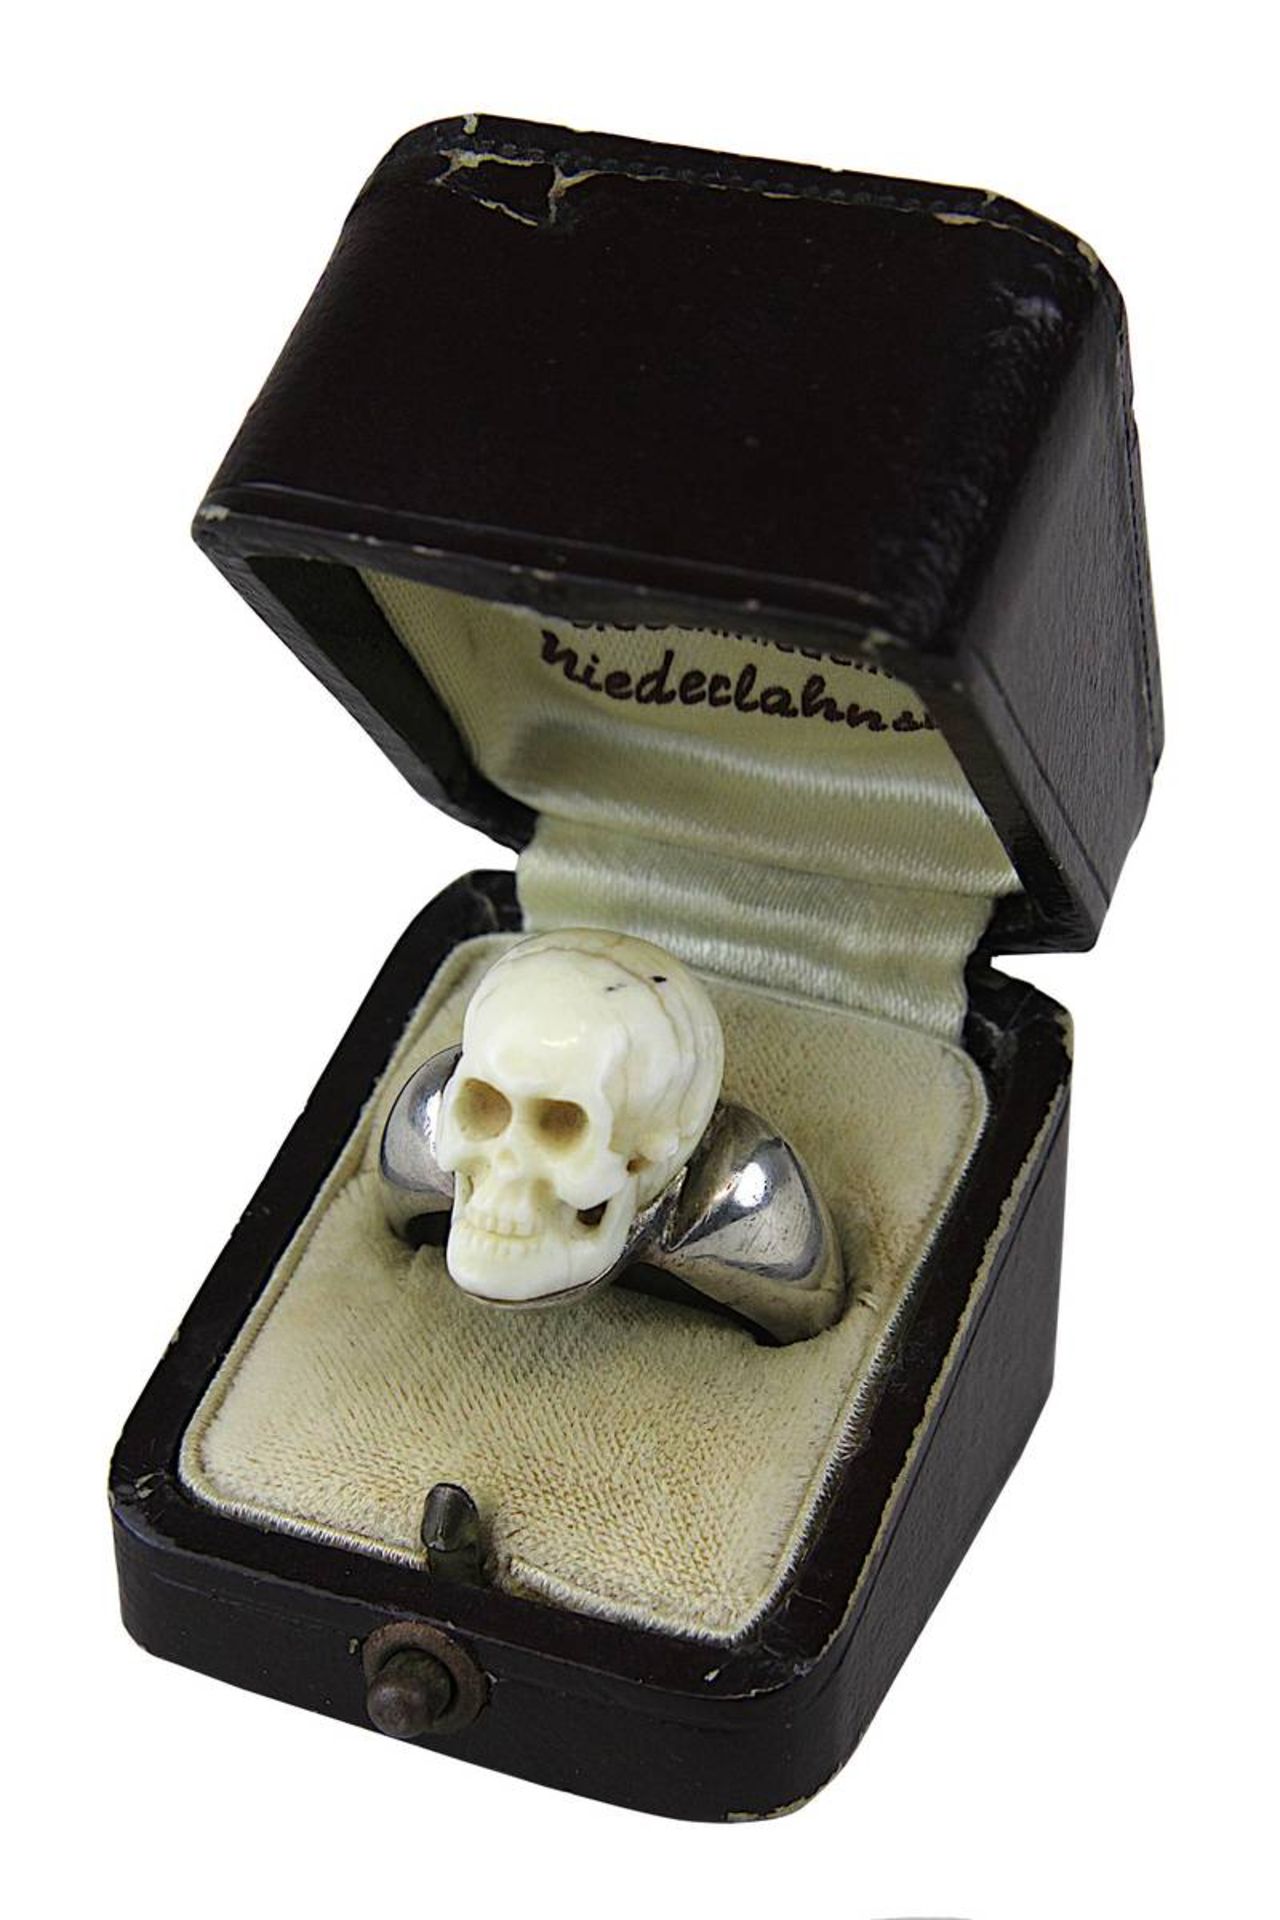 Silberring mit Totenkopf aus geschnitztem Bein, Ringgröße 49, Gewicht 17,5 g, Totenkopf auf einer